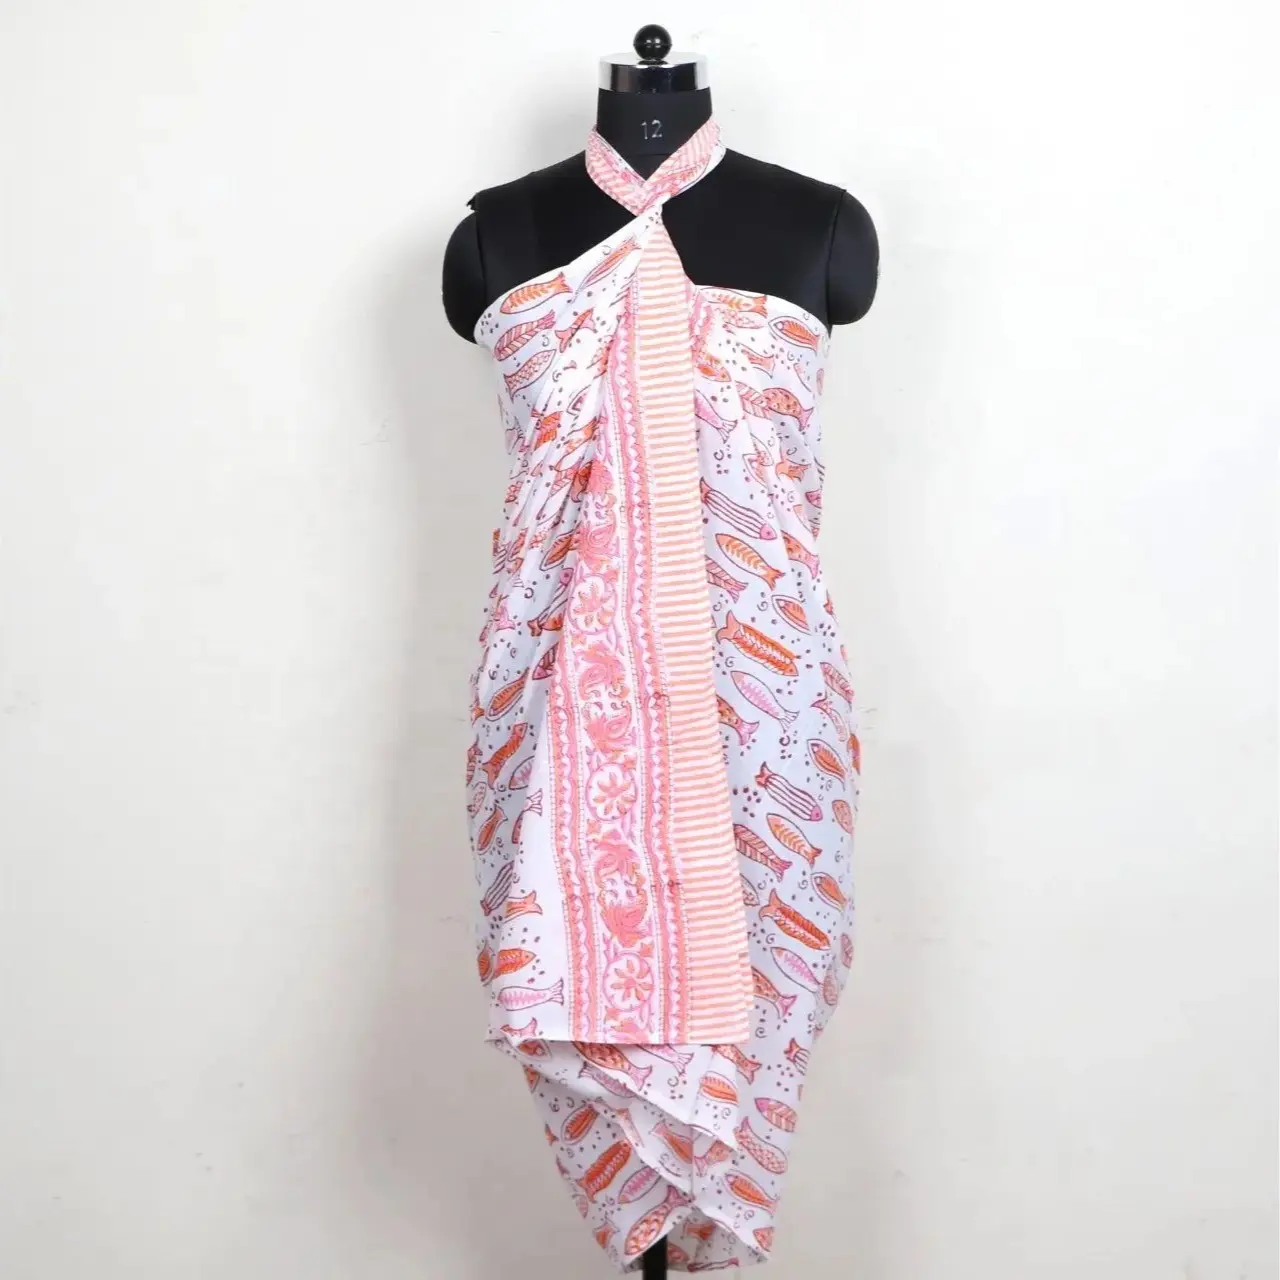 Baumwolle Hand block gedruckt Pareo Sarong Pareo Druck benutzer definierte Rayon Pareos Bali hand bemalt Designer New Beach Fashion